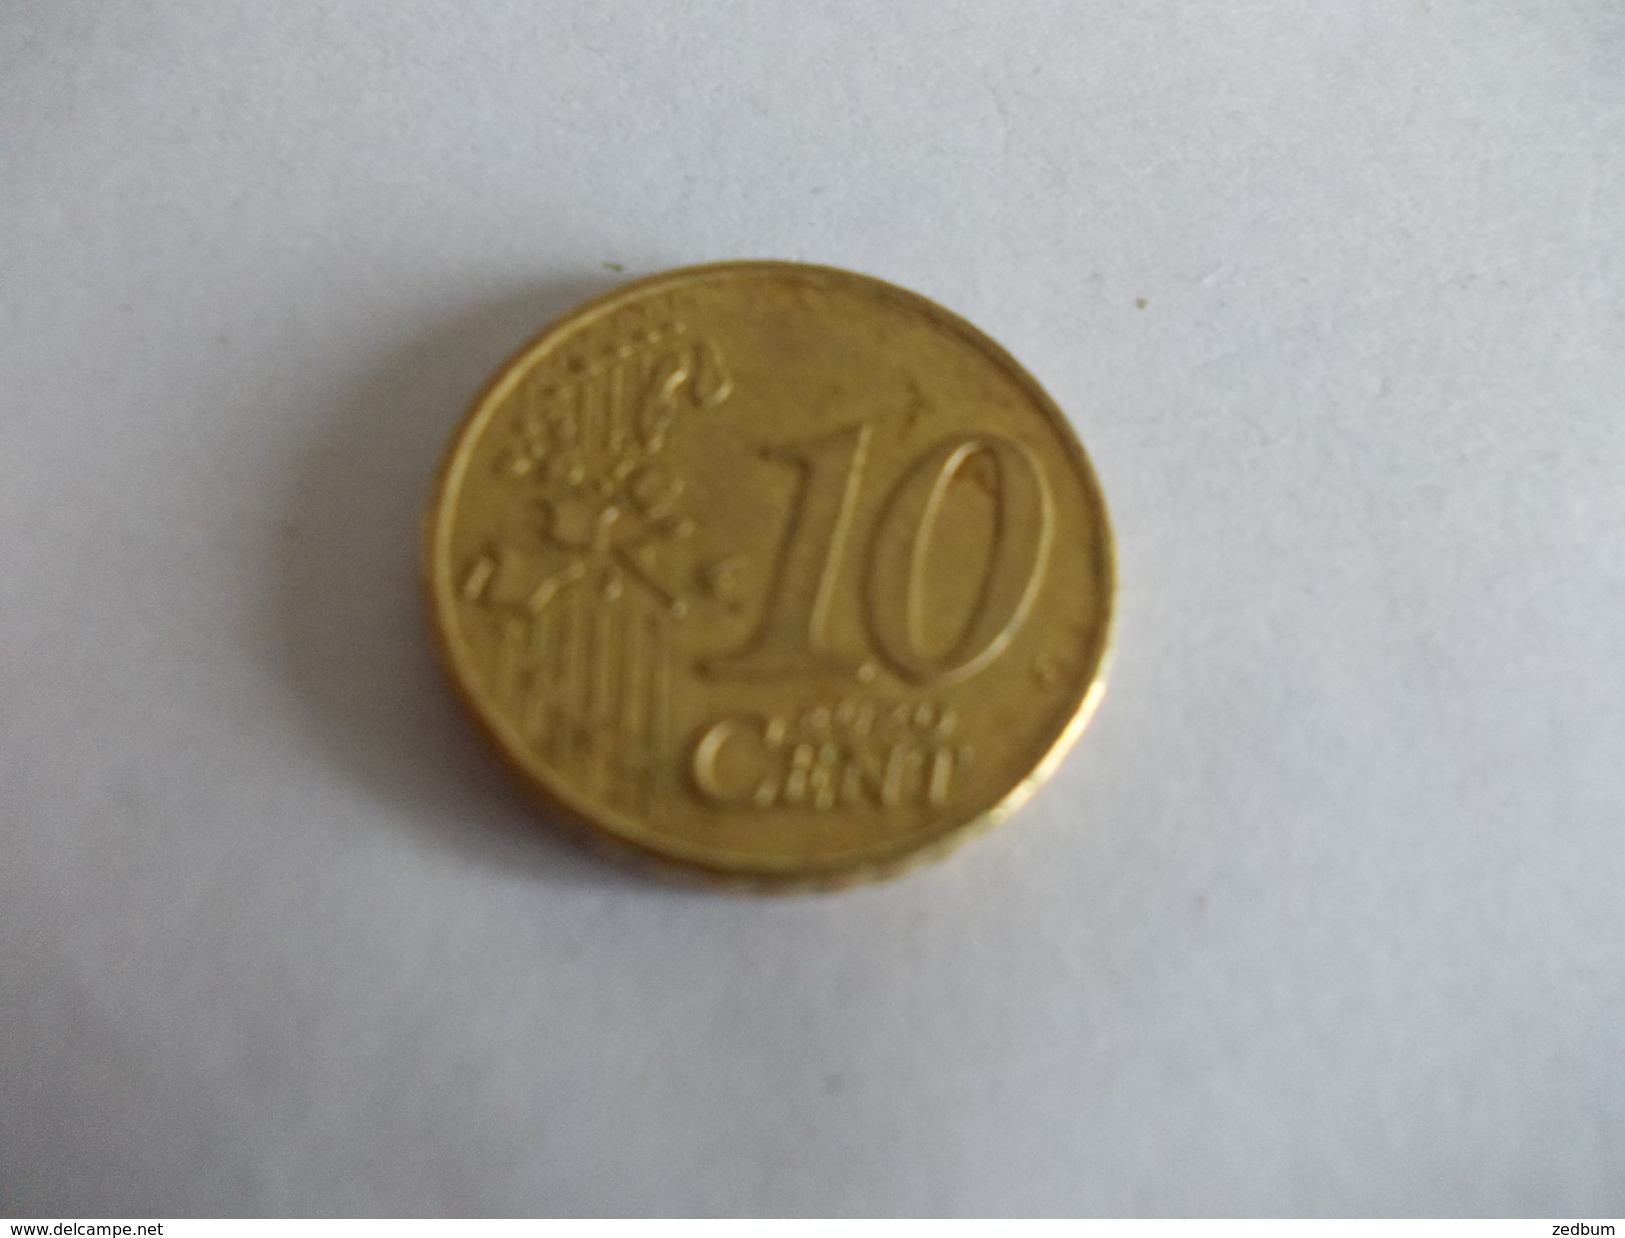 Monnaie Pièce De 10 Centimes D' Euro De Pays Bas Année 2001 Valeur Argus 1 &euro; - Pays-Bas